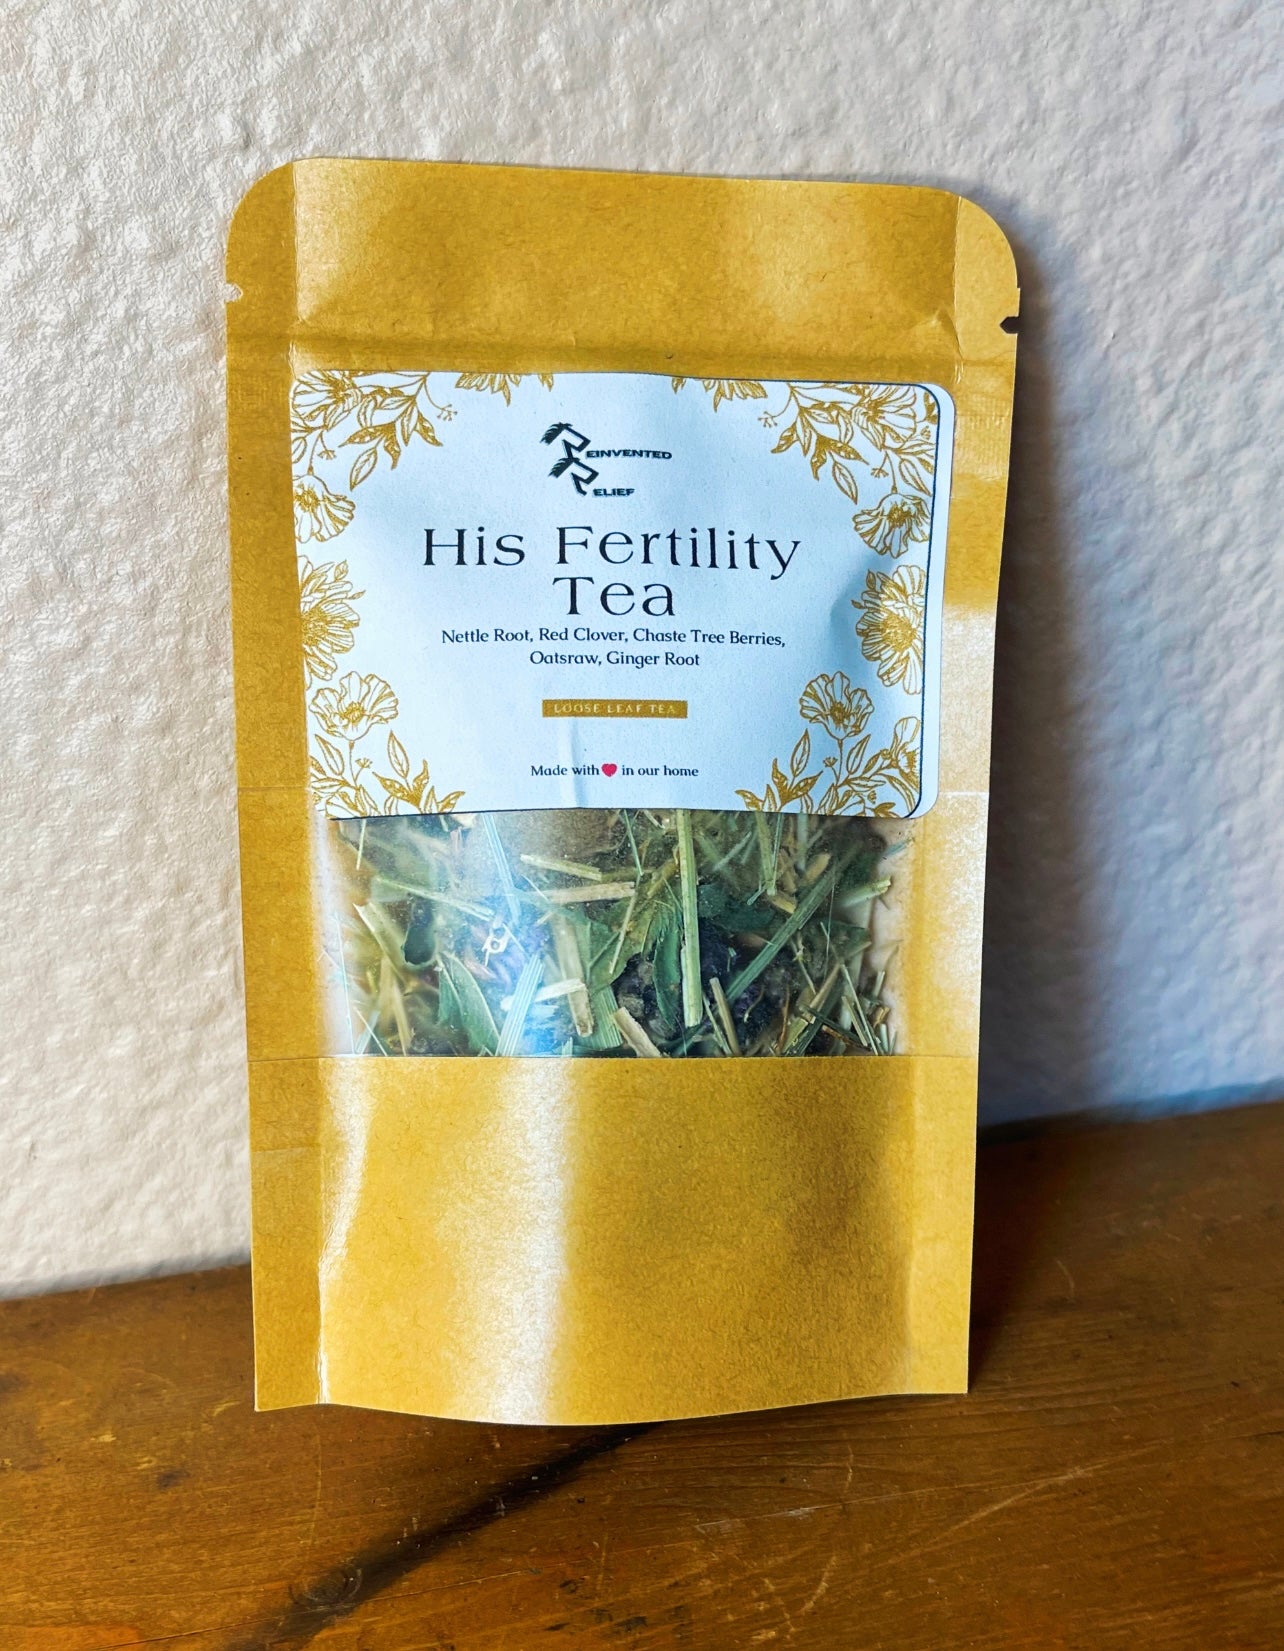 Herbal Teas